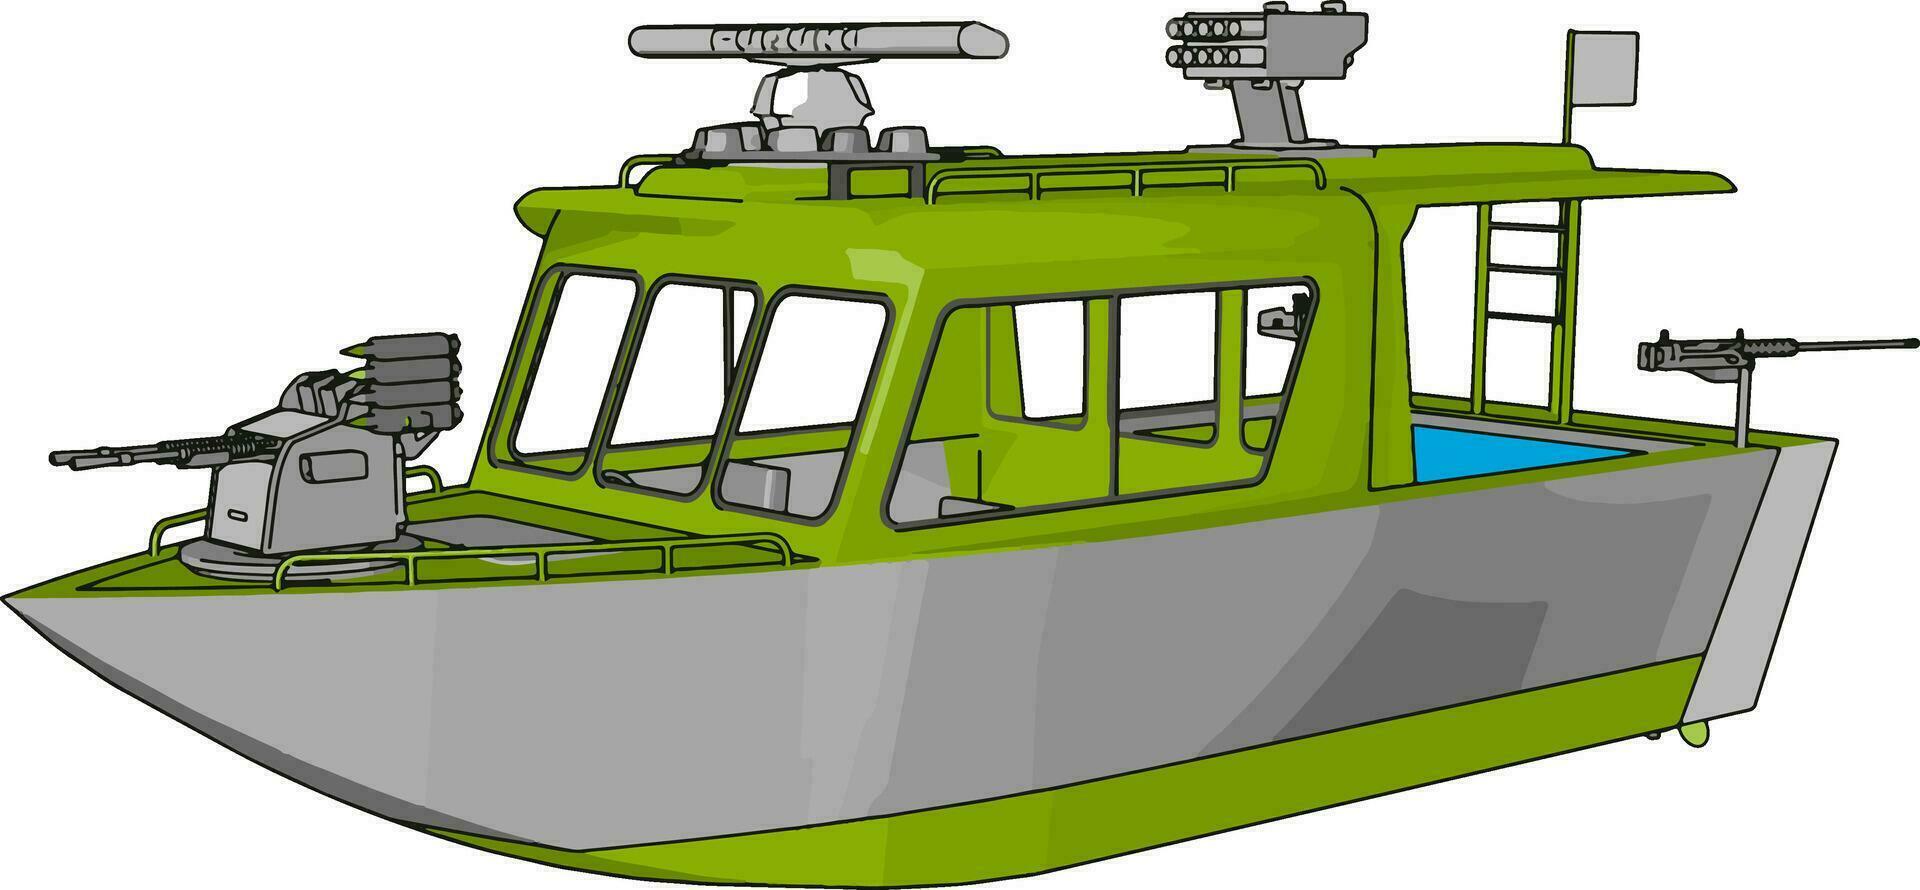 3d vektor illustration på vit bakgrund av en grå och grön militär båt